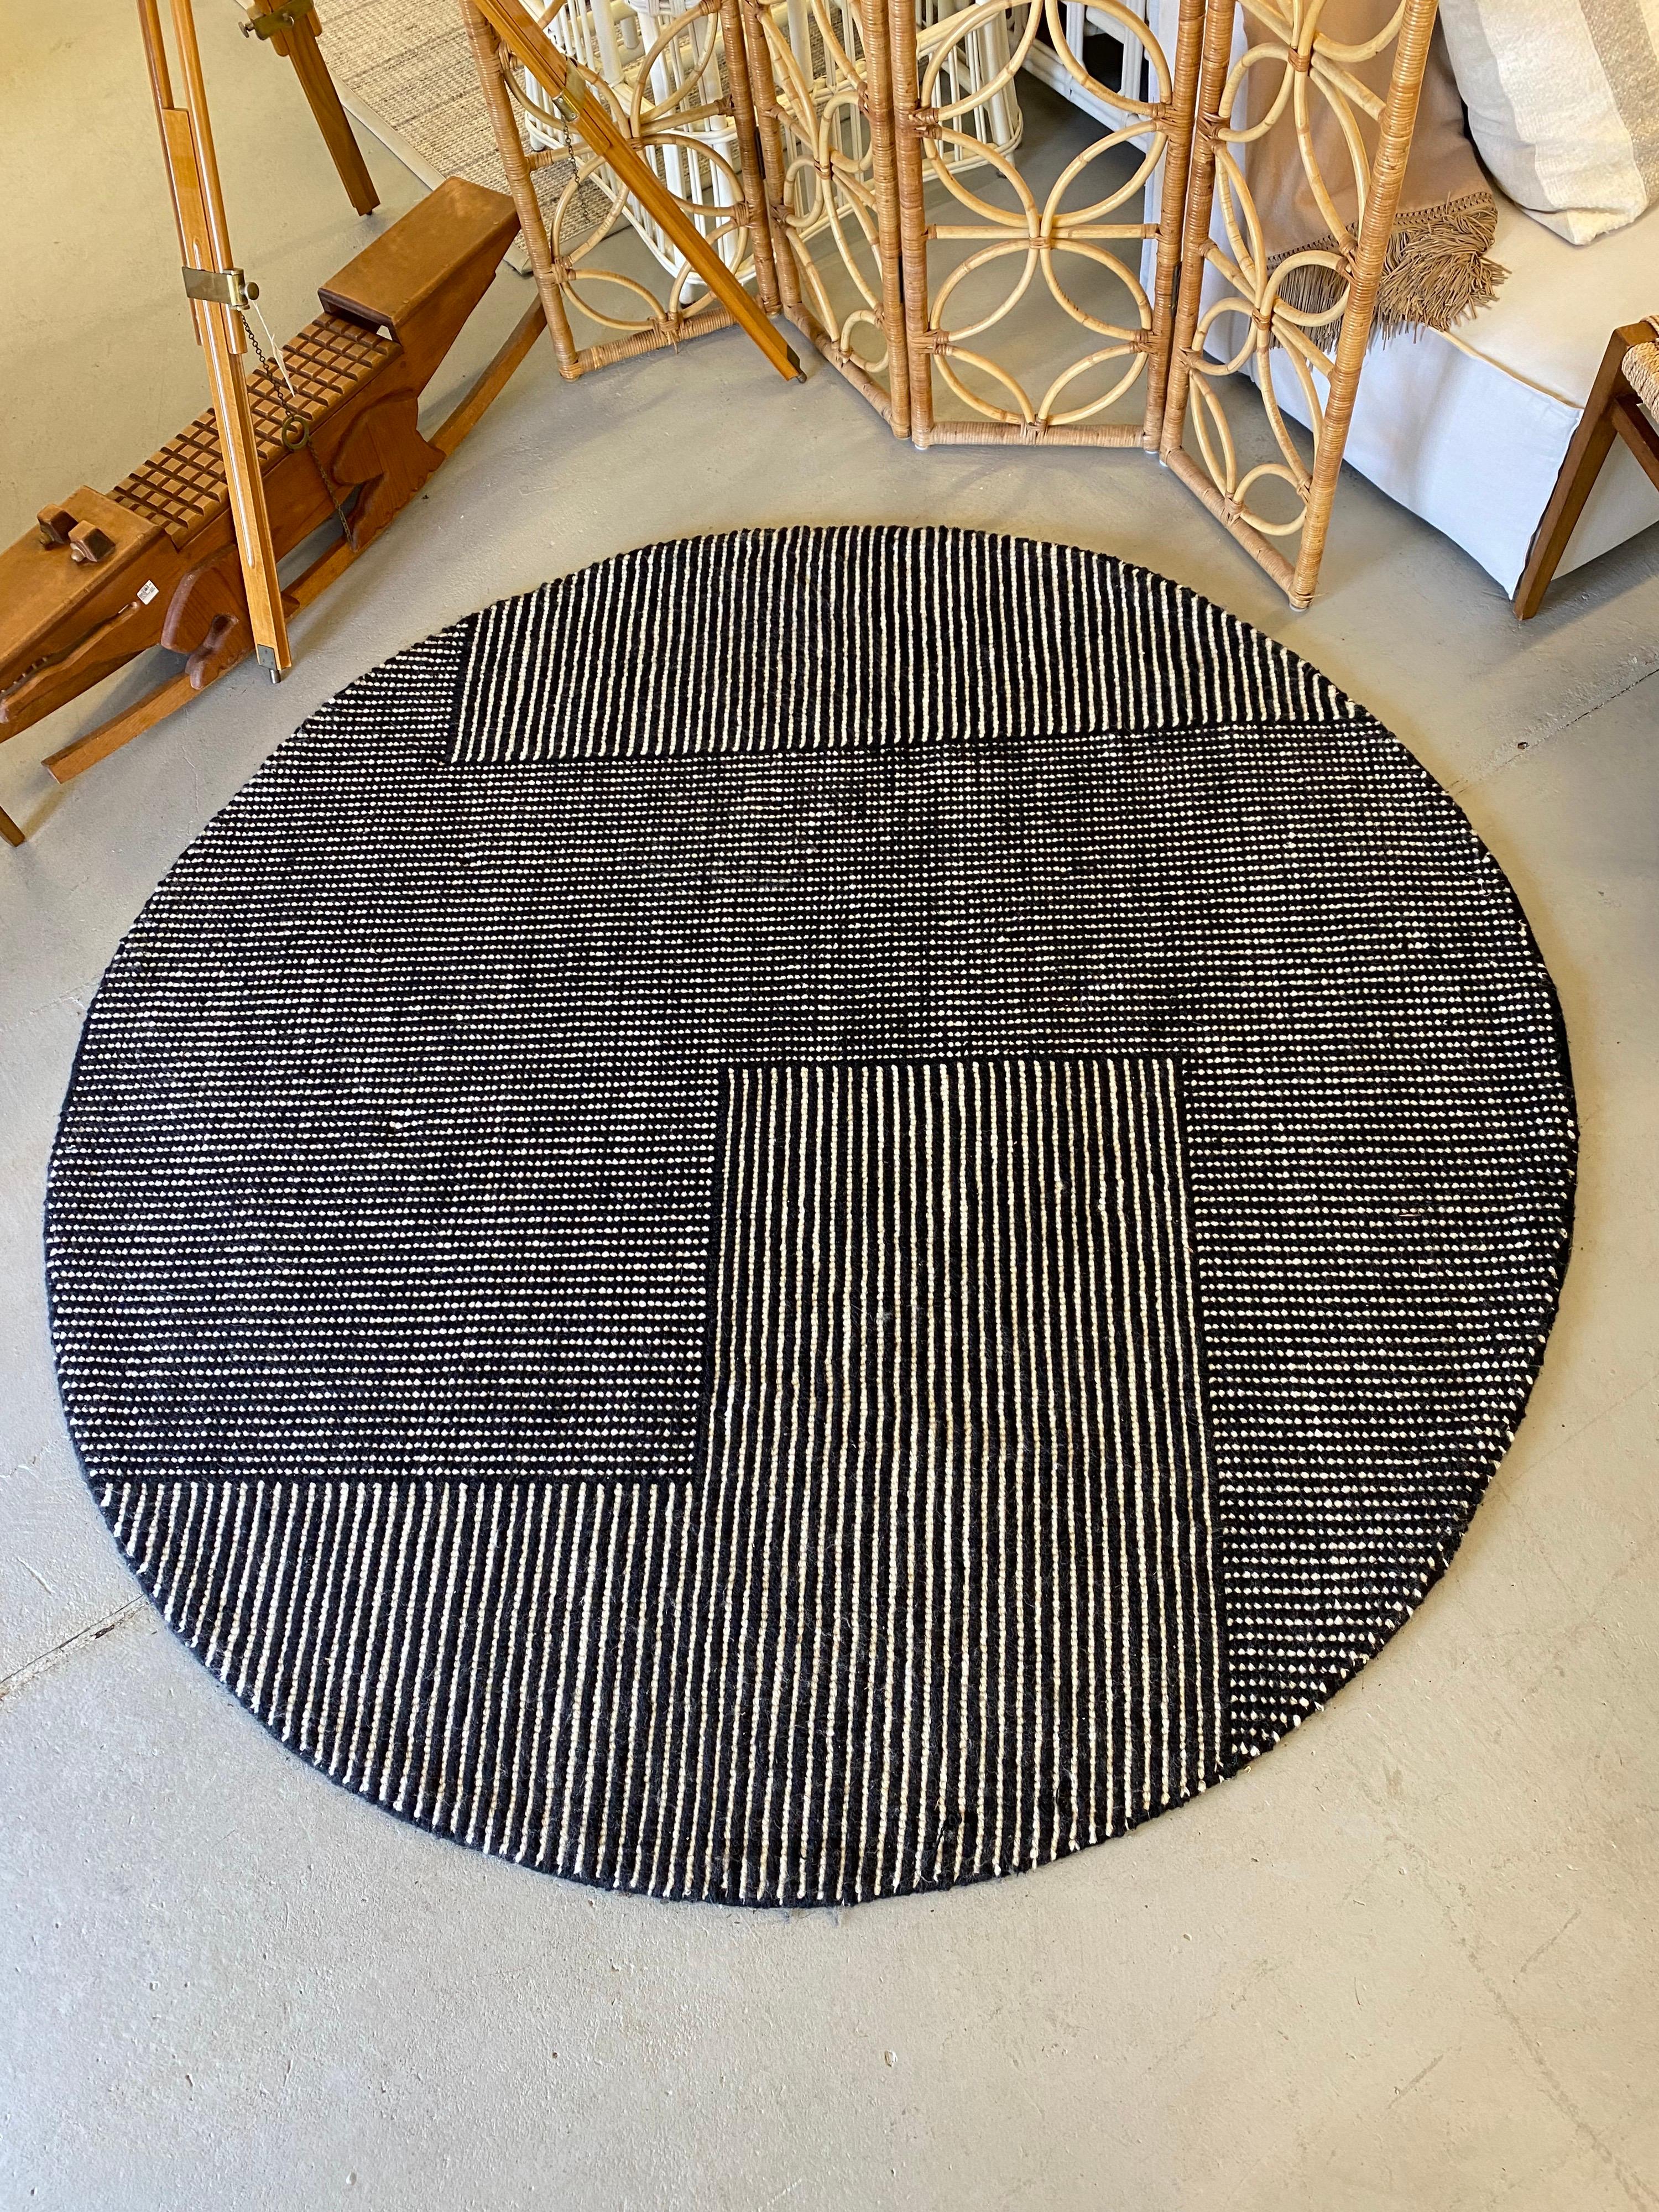 Tom Dixon brown rug

Measures: 78.5